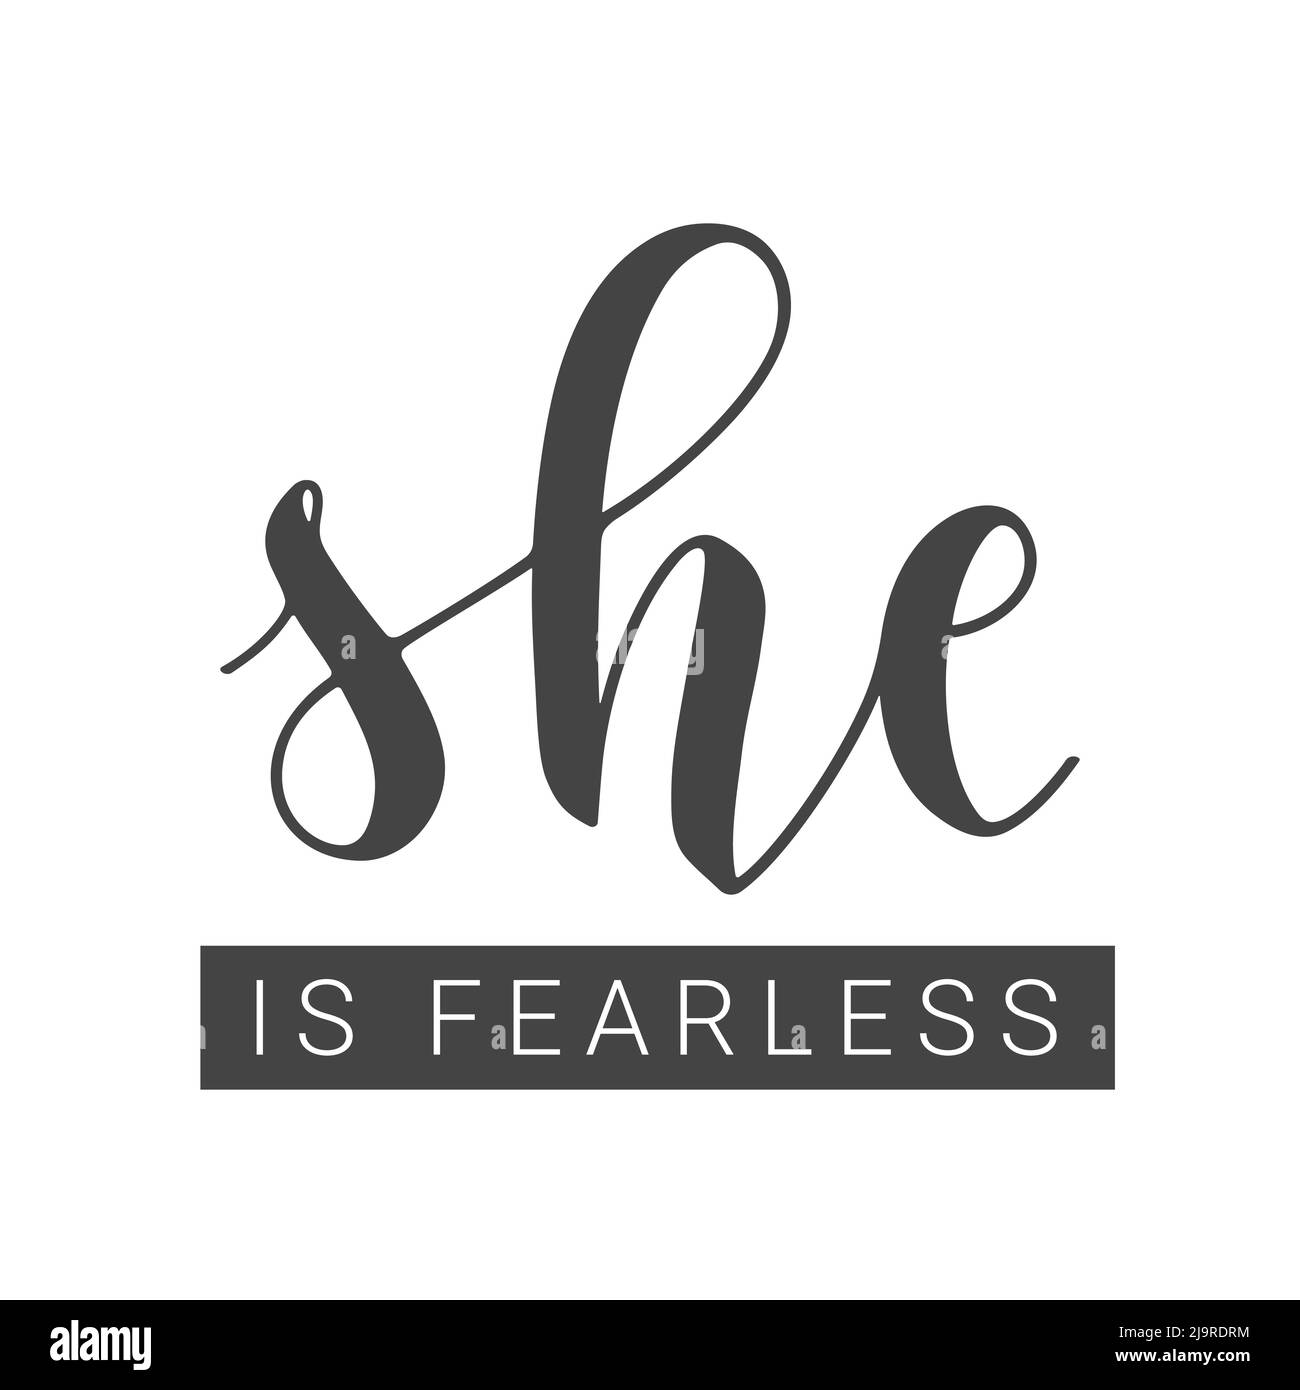 Vektorgrafik. Handgeschriebene Schriftzüge von She is Fearless. Vorlage für Karte, Etikett, Postkarte, Poster, Aufkleber, Print- oder Web-Produkt. Stock Vektor